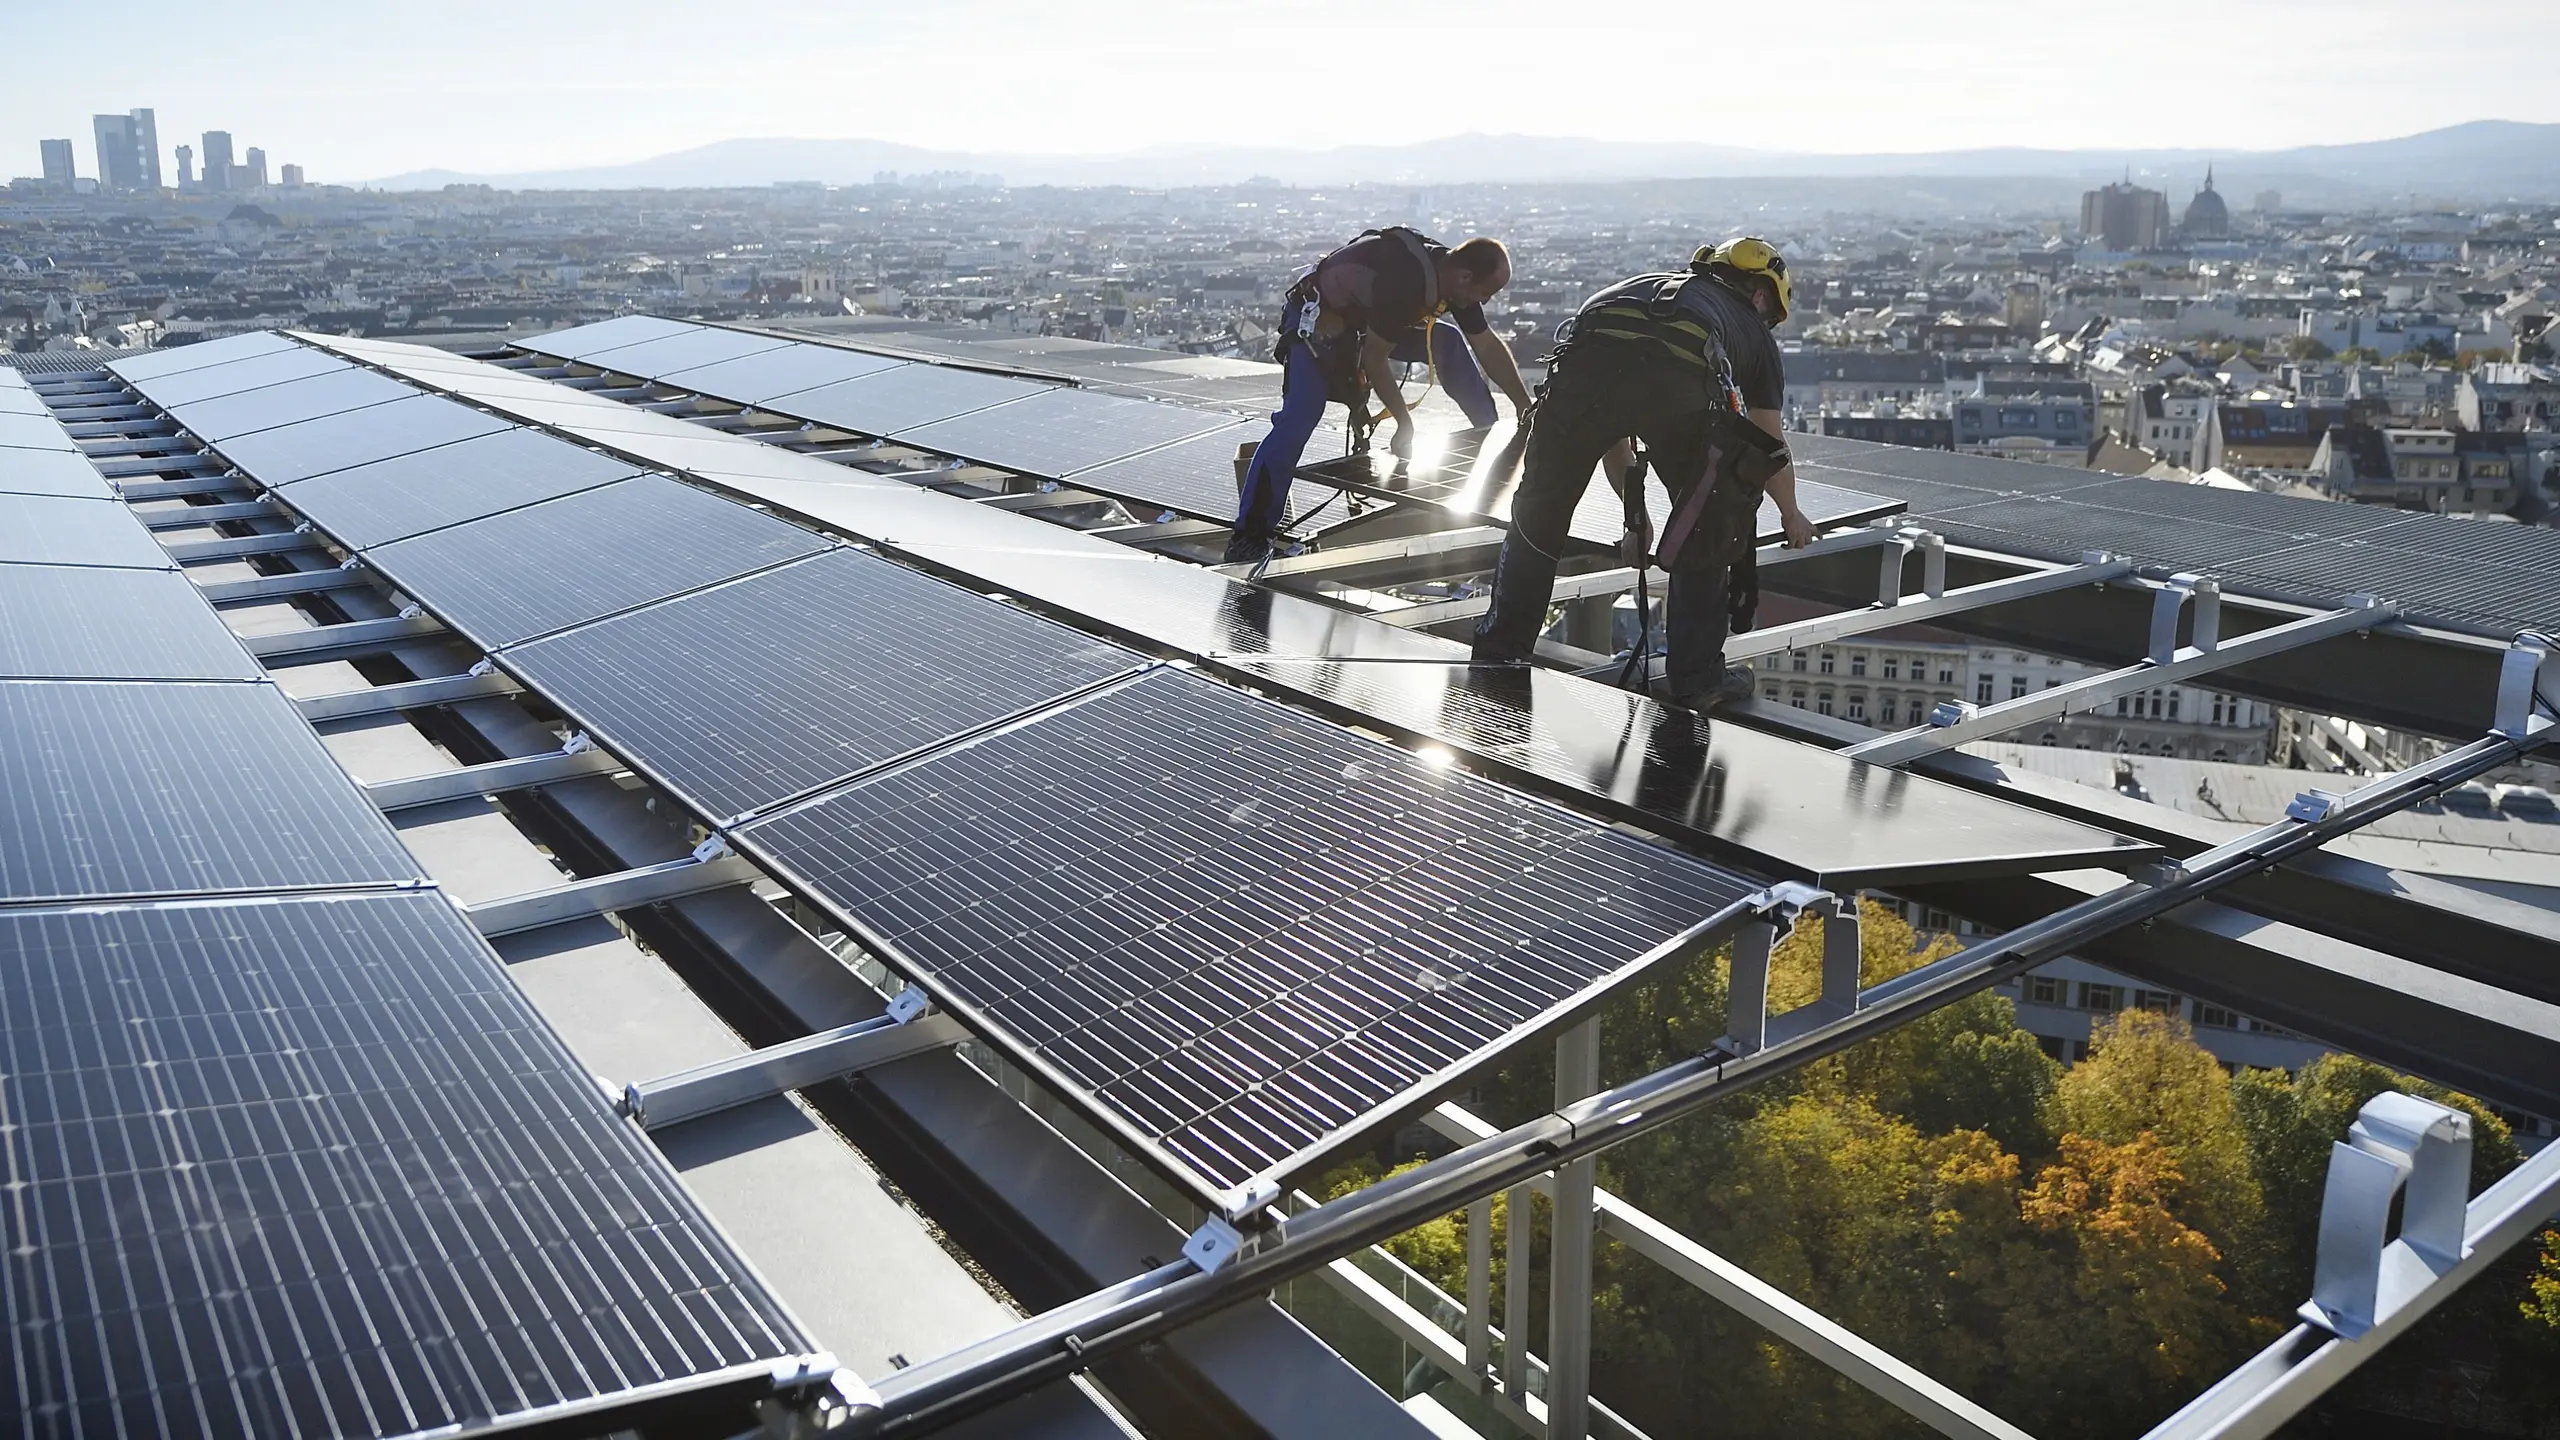 PHOTOVOLTAIK. Bis 2030 soll die Photovoltaik-Gesamtleistung in Wien 800 Megawatt erreichen.